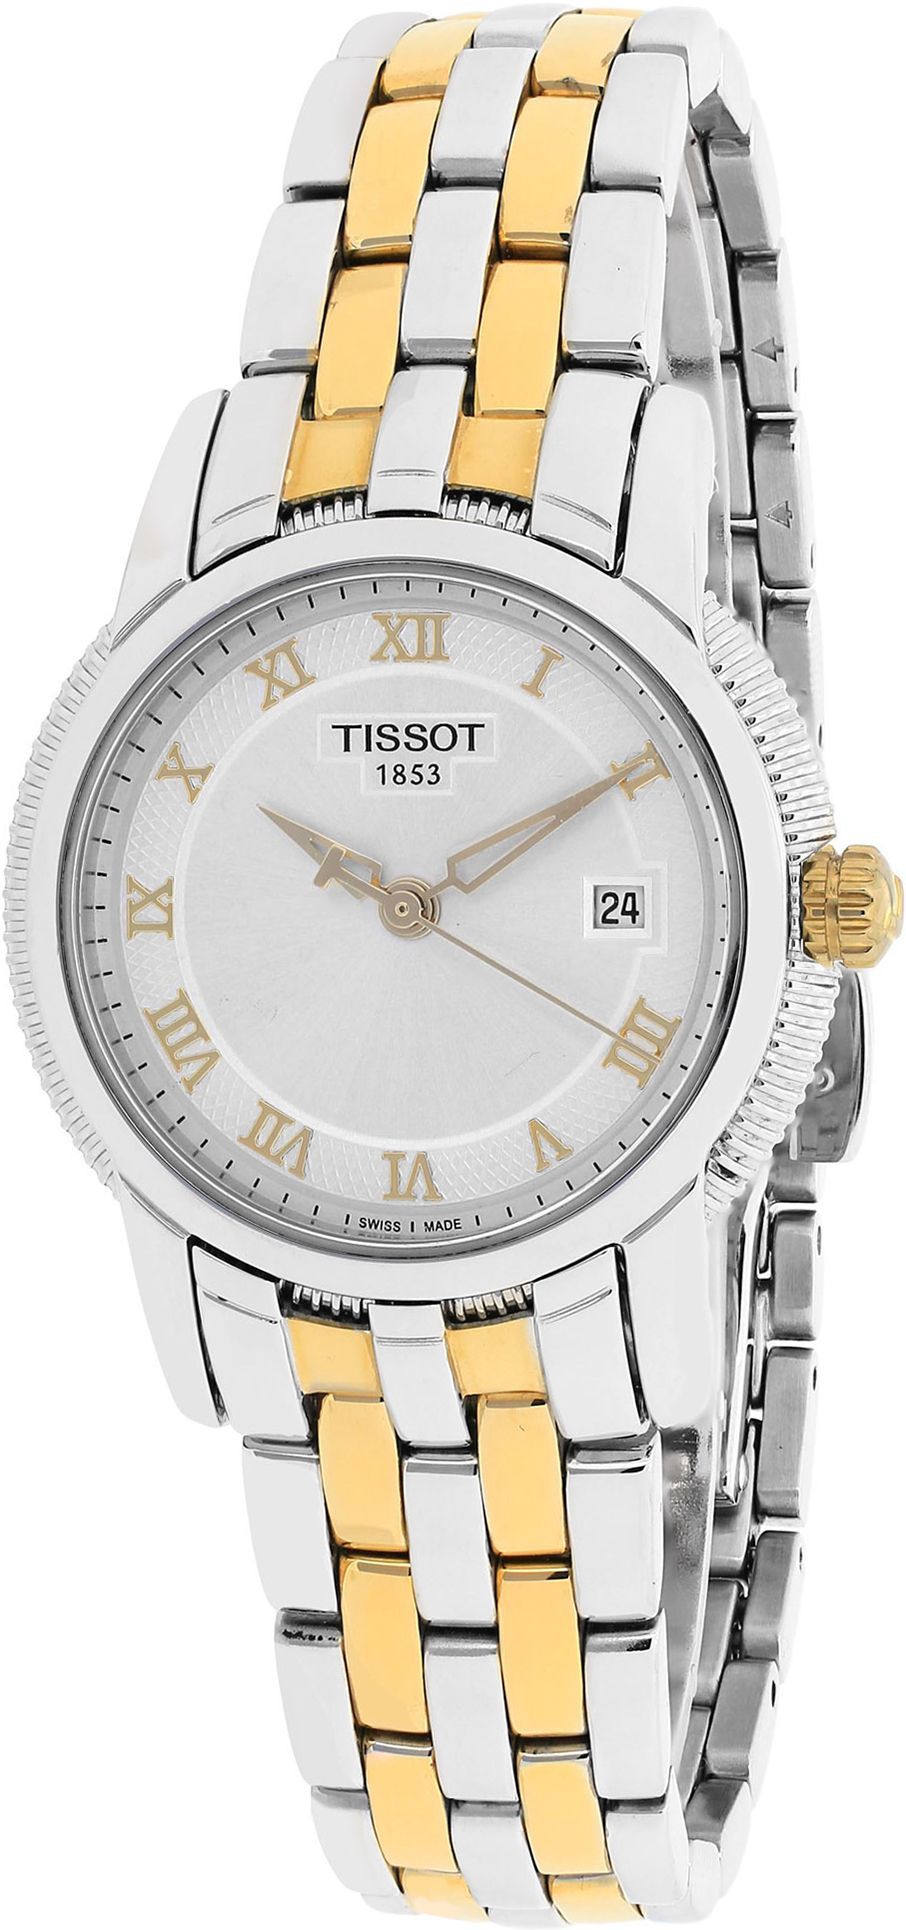 Tissot T-Classic Ballade III Silver Dial 28 mm Quartz Watch For Women - 1